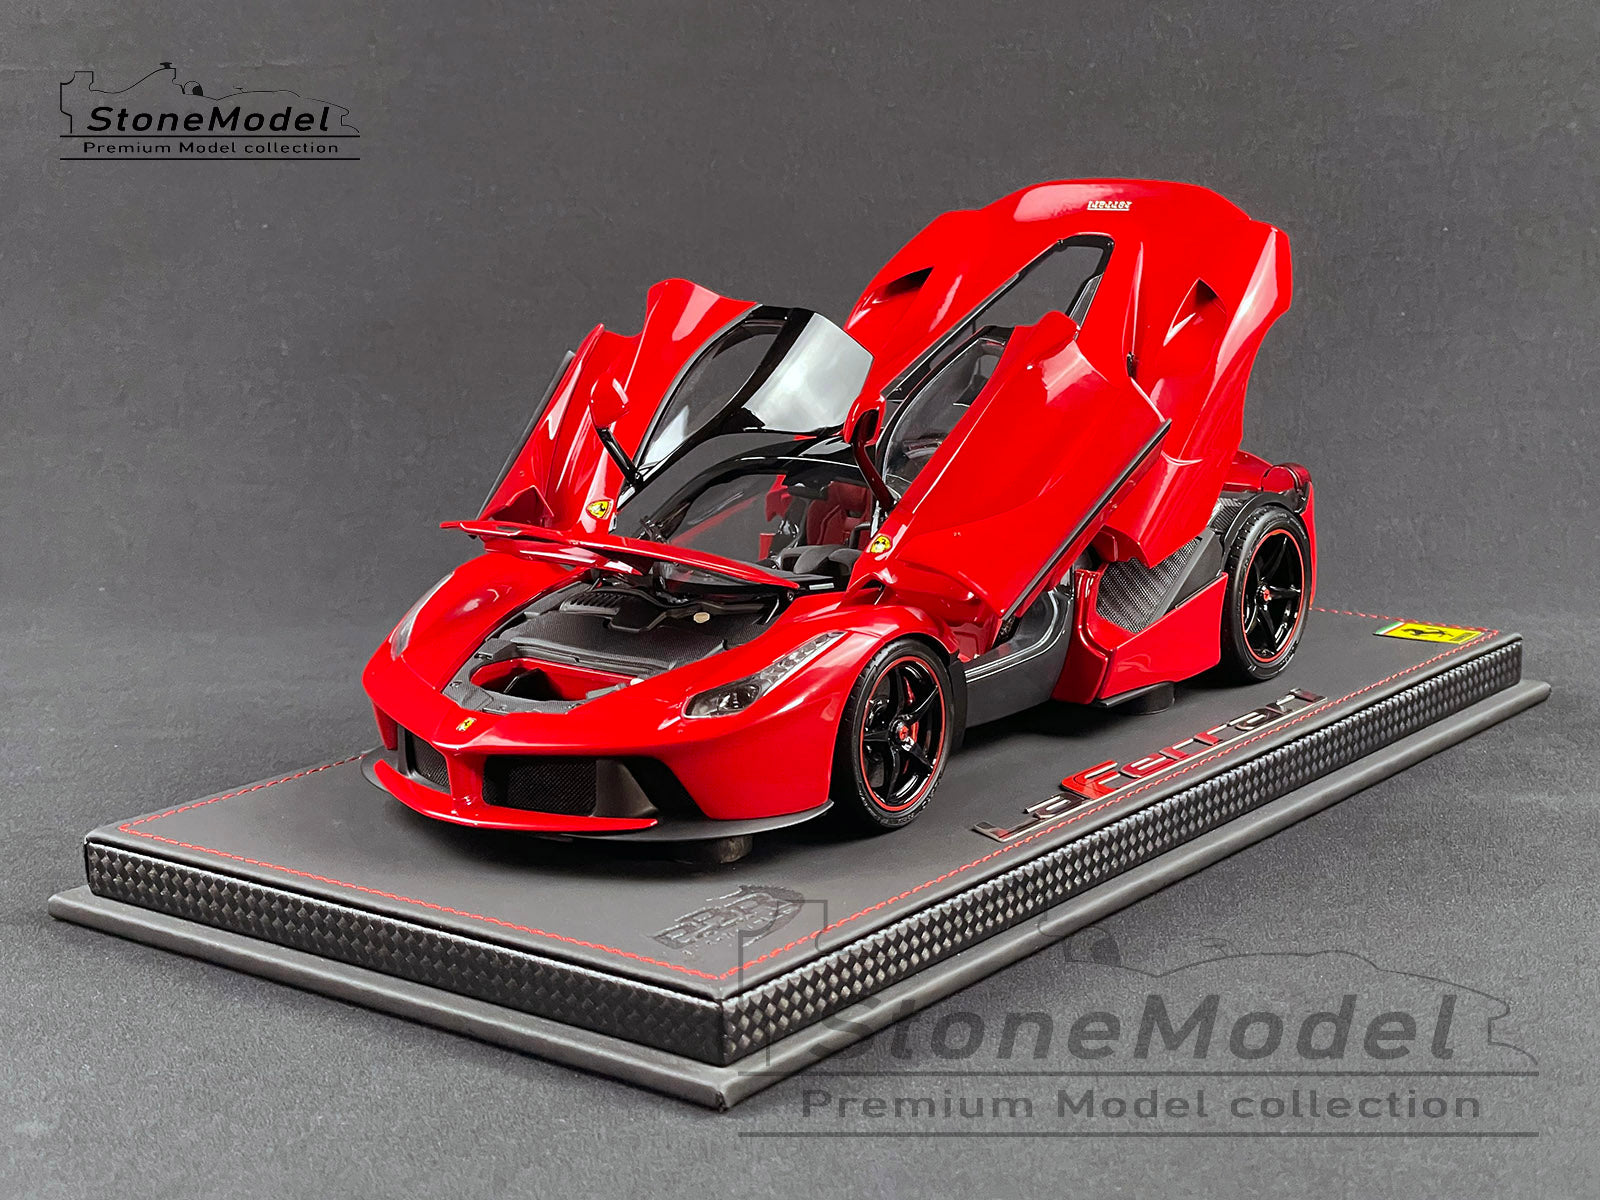 BBR High End Ferrari 1:18 LaFerrari Metallic Red Fire Rosso Fuoco Met –  Stone Model